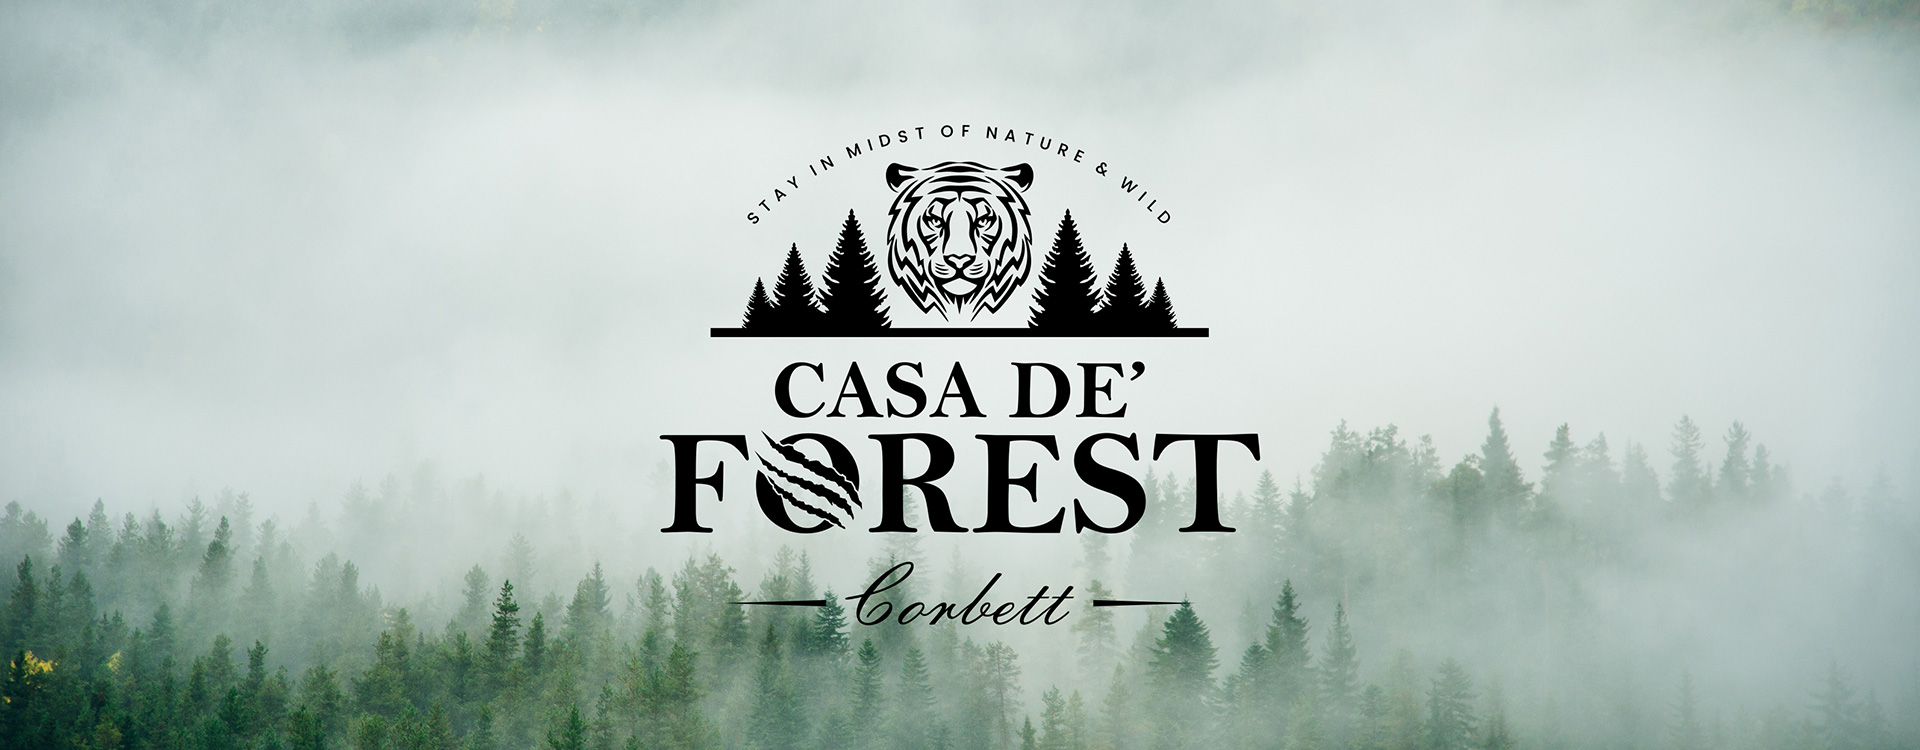 Casa De' forest